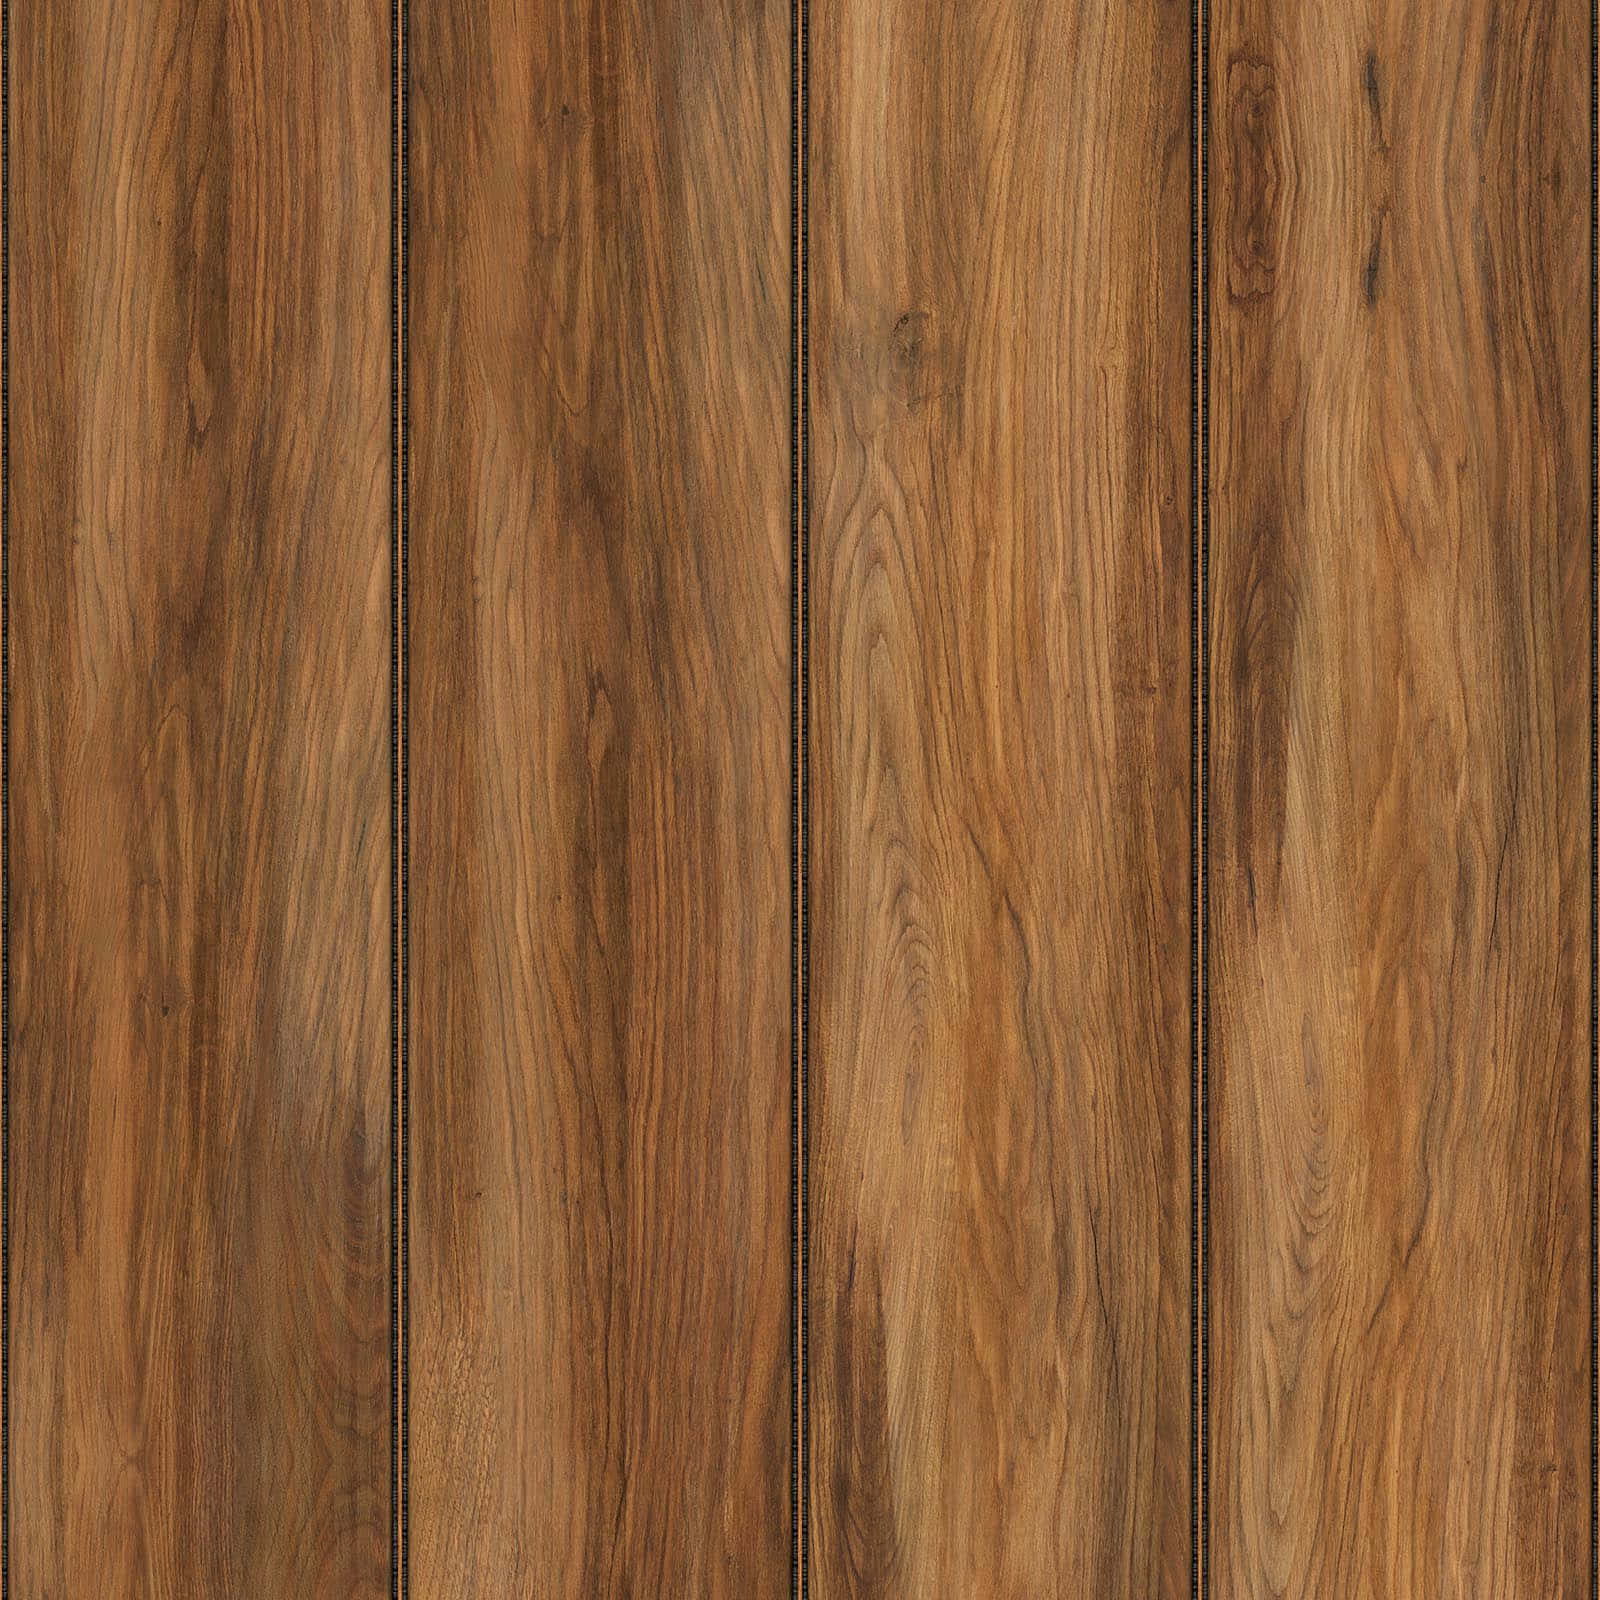 Rustic Wood Panel Wallpaper Wallpaper